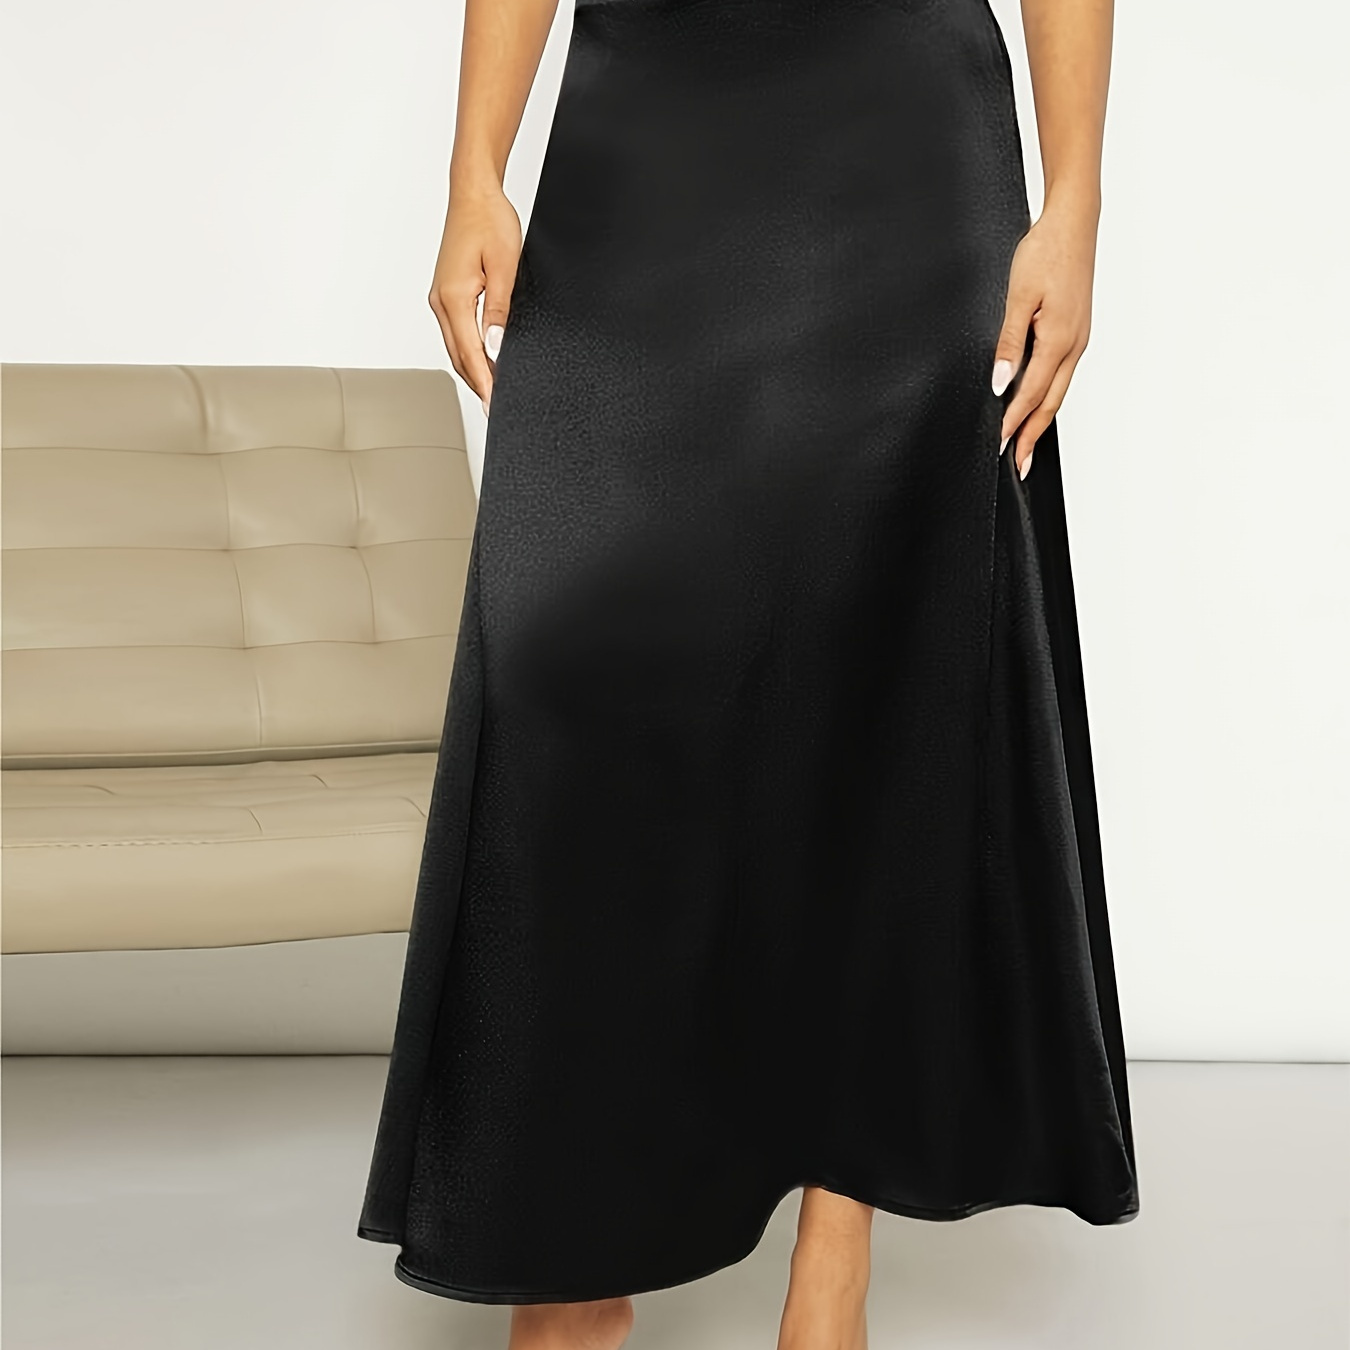 

Solid Color High Waist A-line Skirt, Elegant Ballerina Length Skirt For Spring & Summer, Women's Clothing